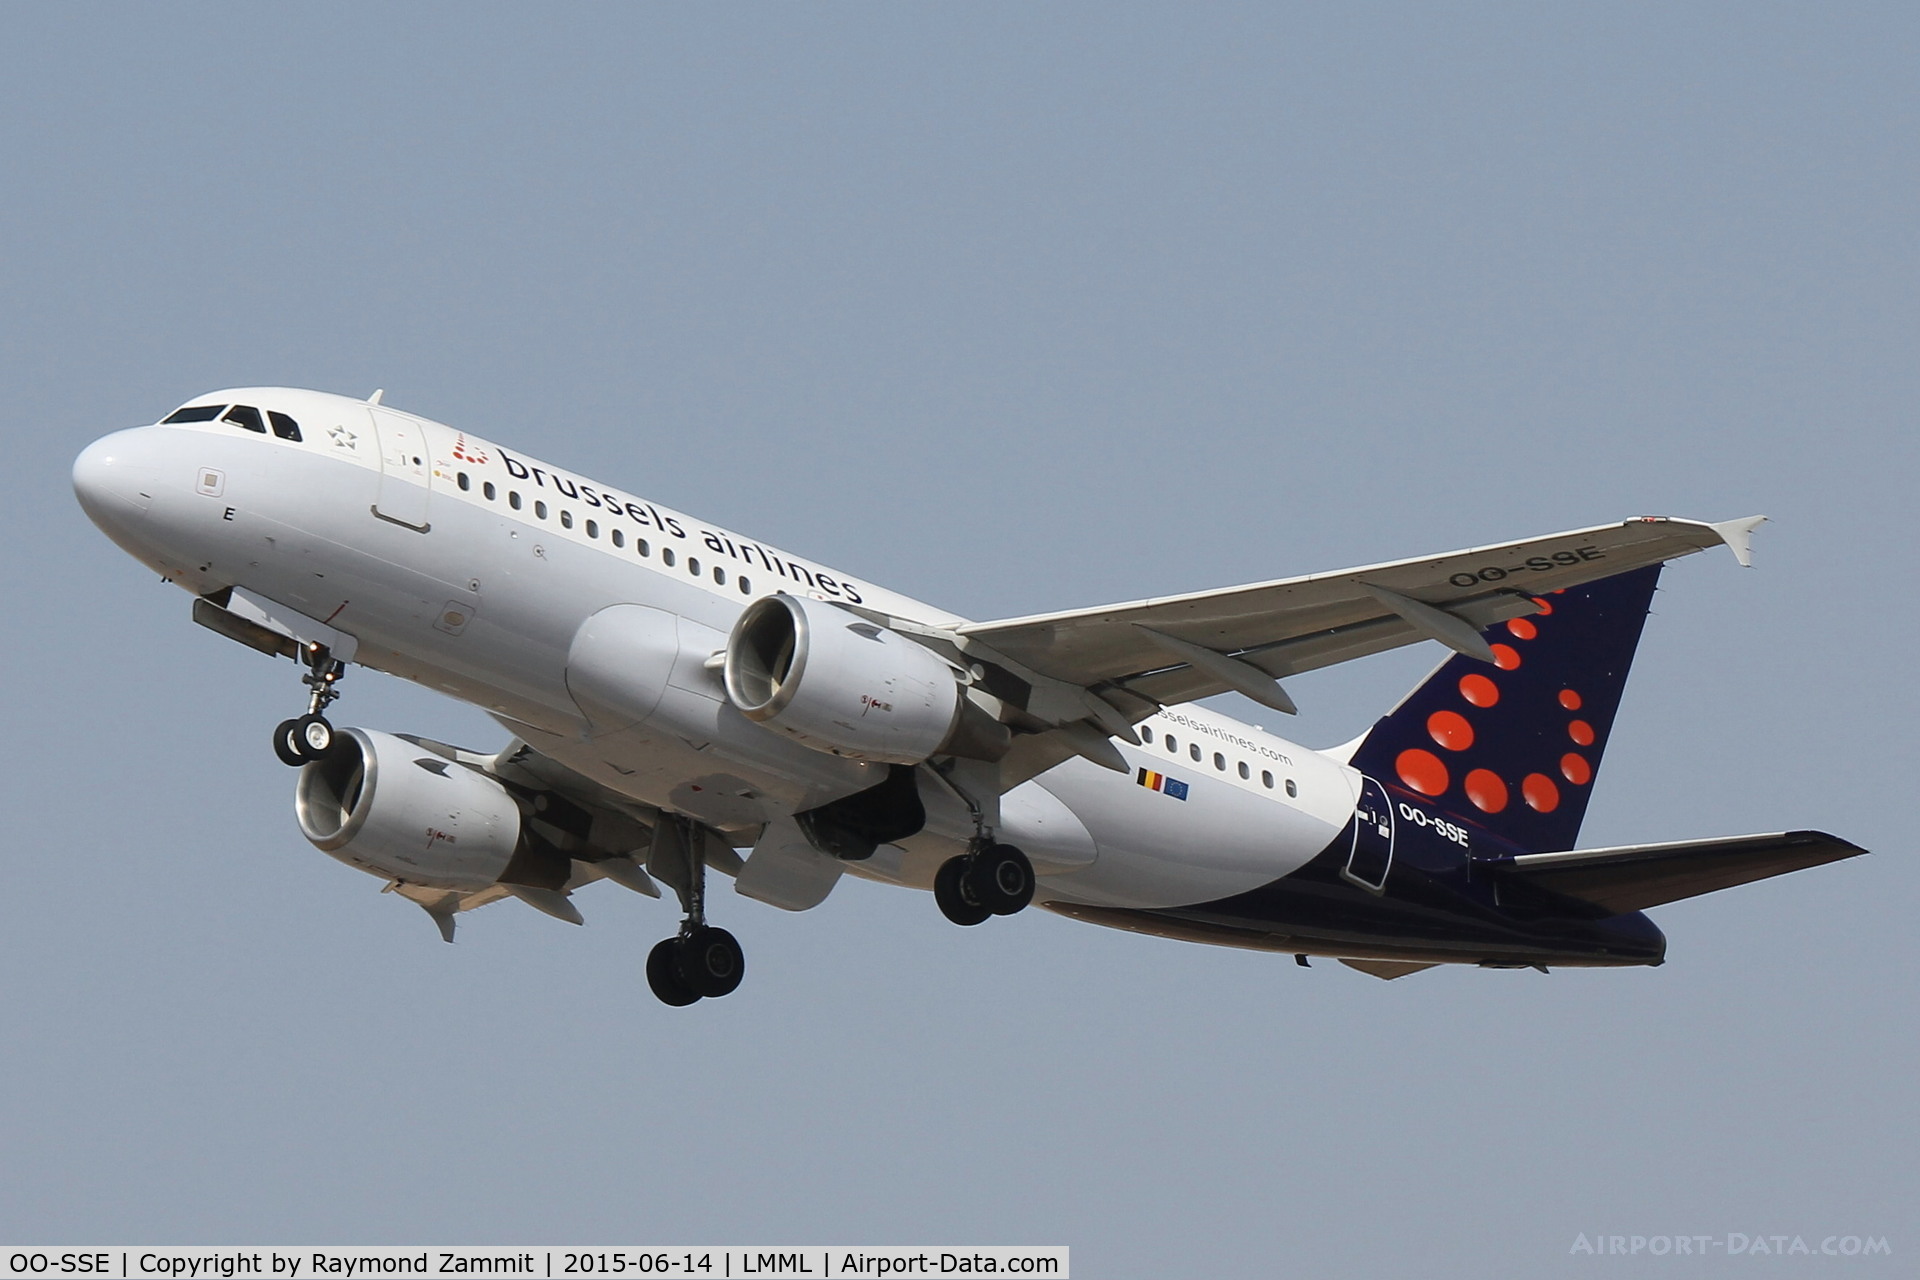 OO-SSE, 2006 Airbus A319-111 C/N 2700, A319 OO-SSE Brussels Airlines